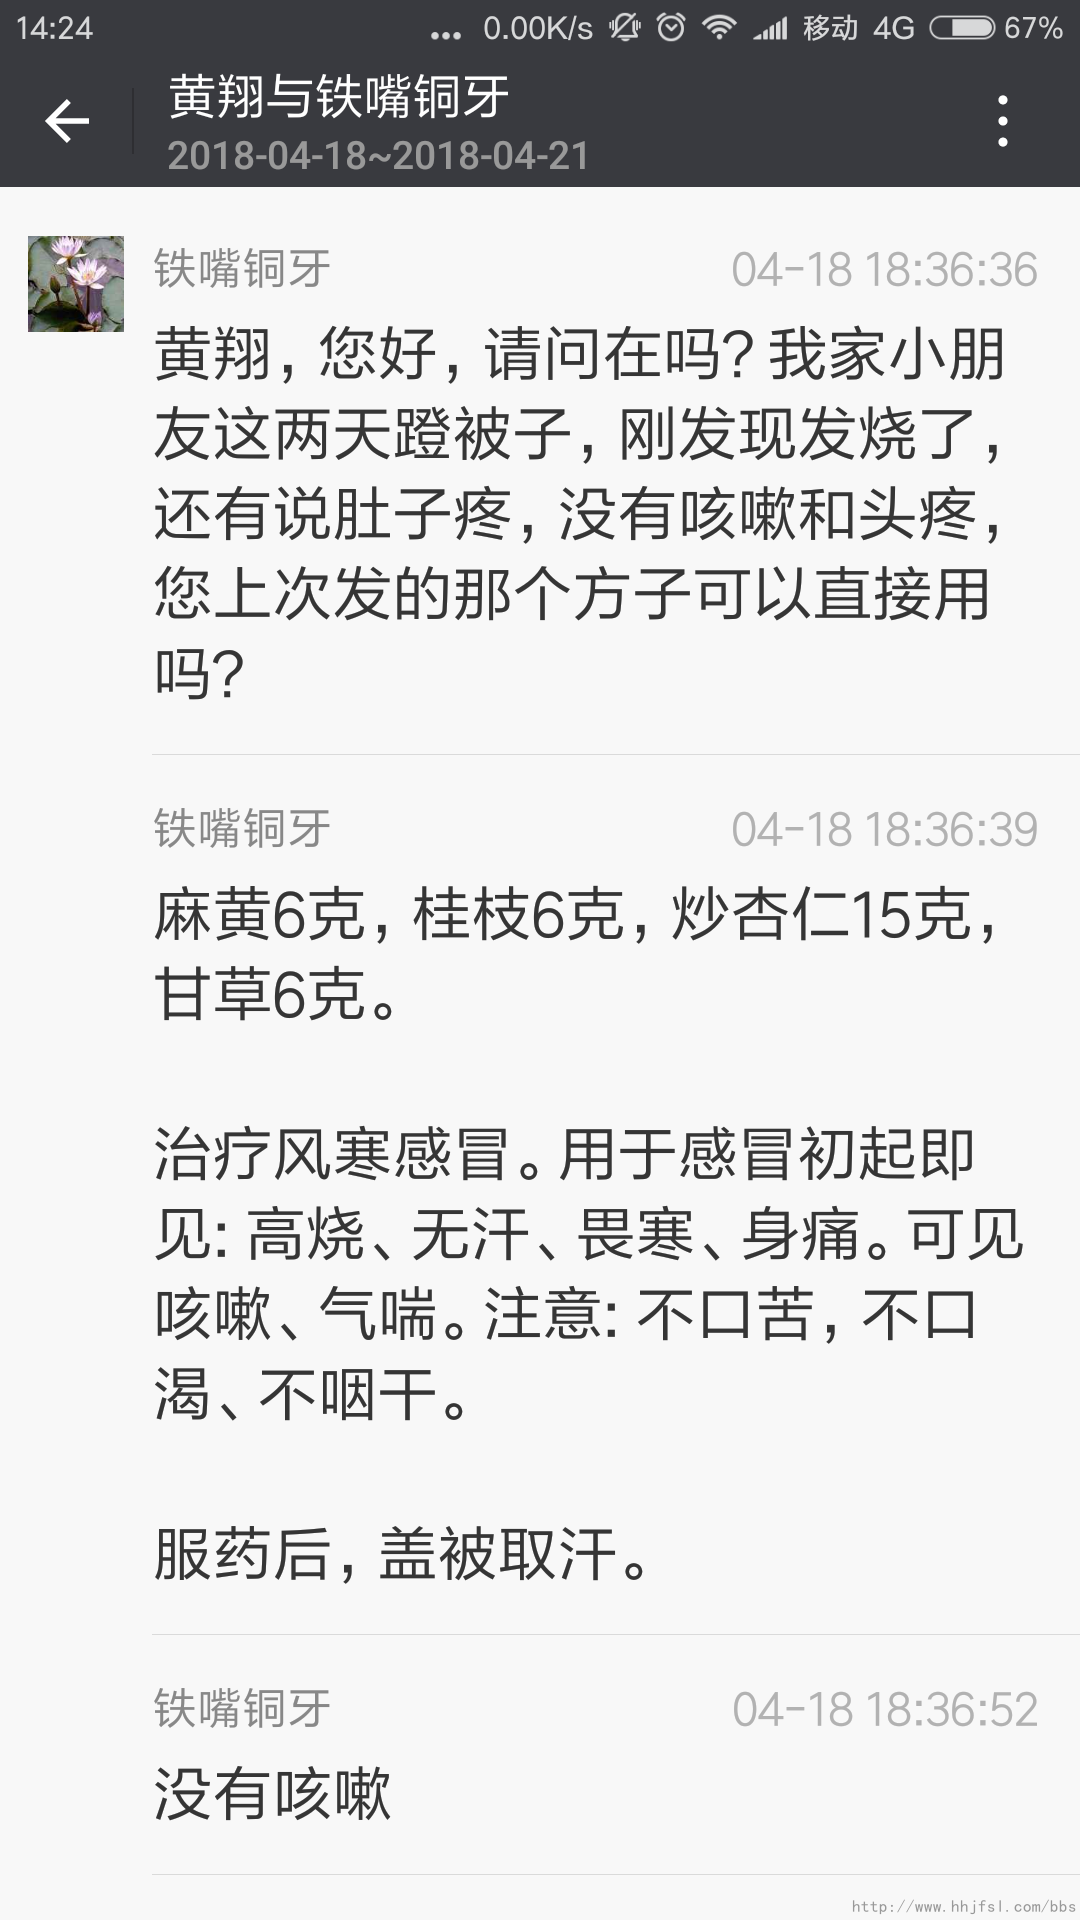 Screenshot_2018-04-21-14-24-10-202_com.tencent.mm.png